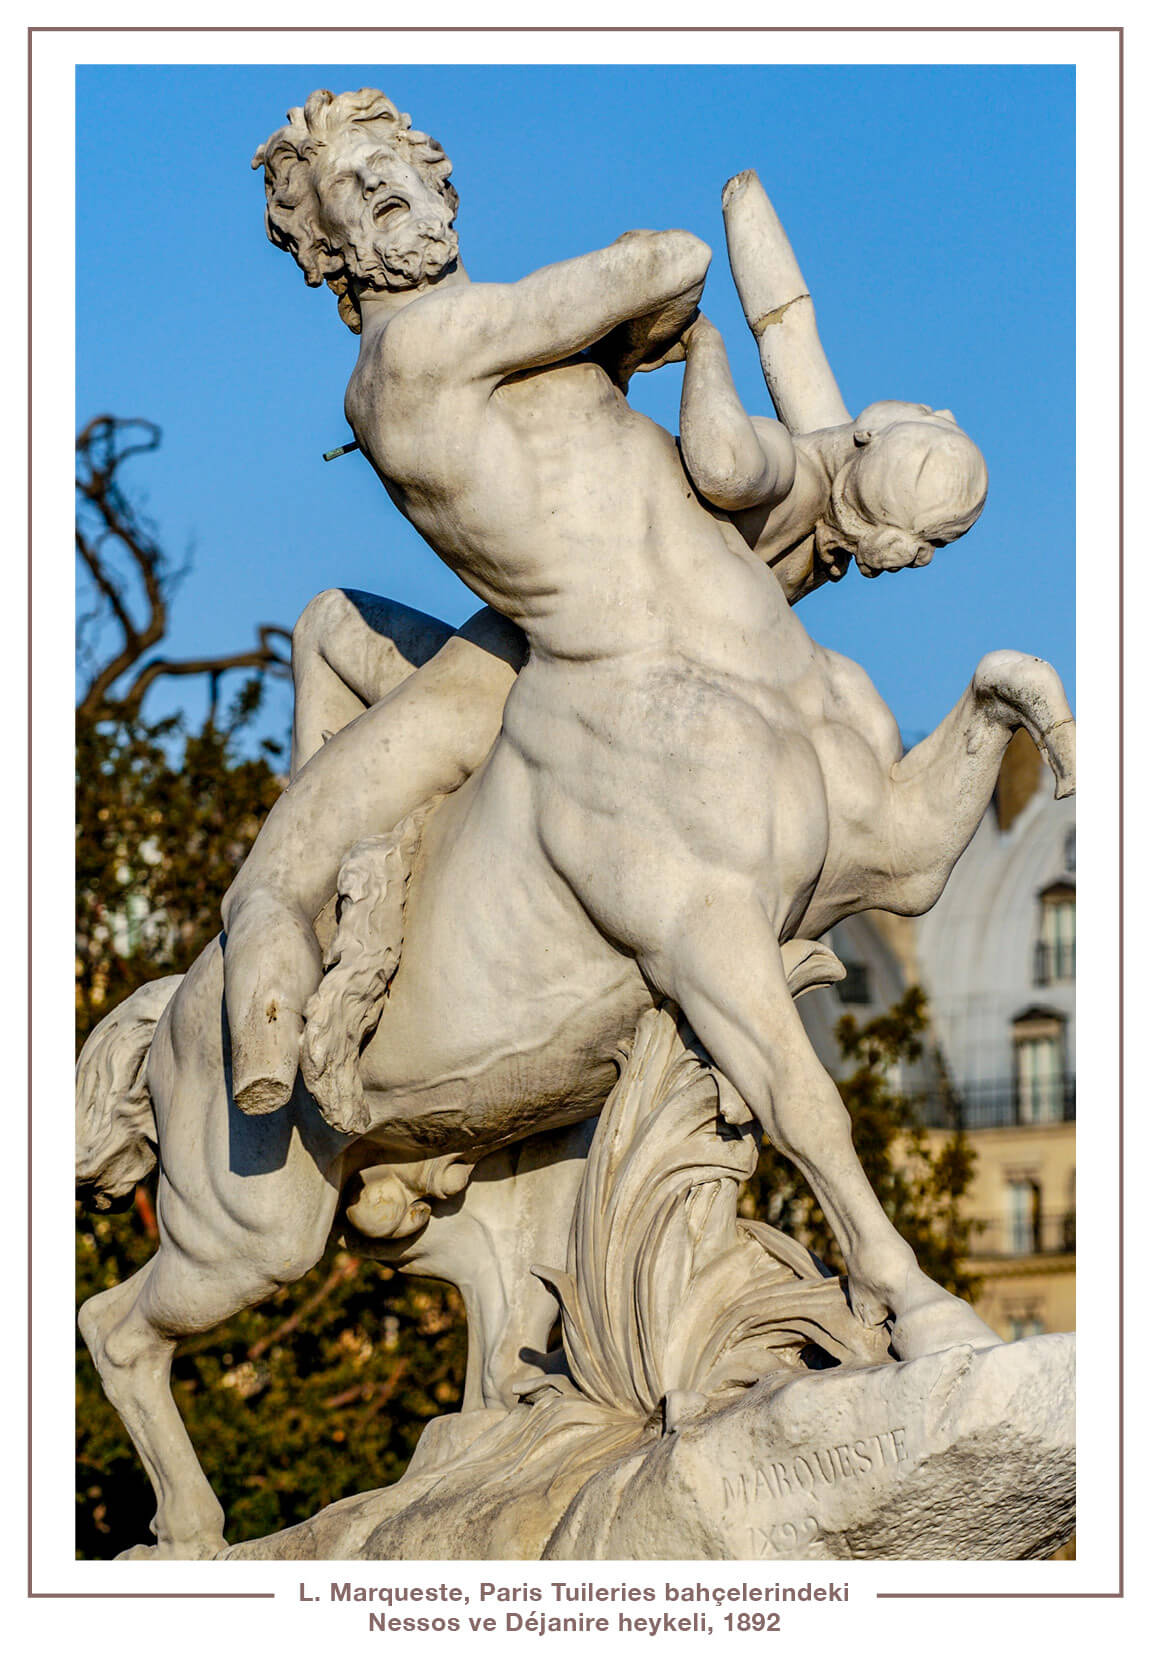 L. Marqueste, Paris Tuileries bahçelerindeki Nessos ve Déjanire heykeli, 1892.